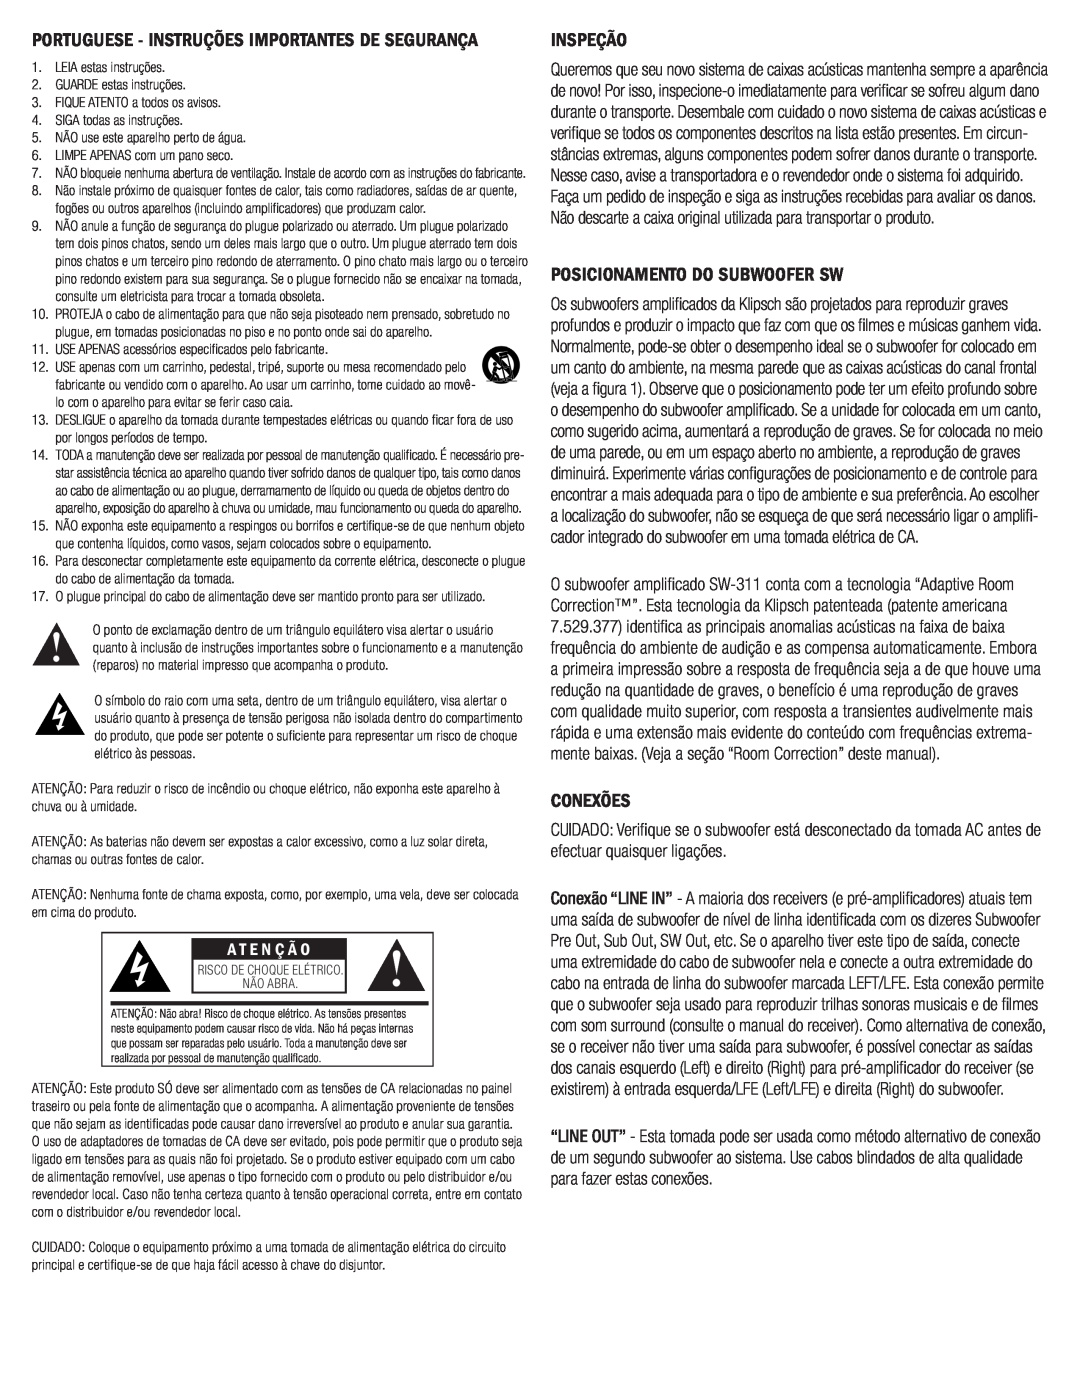 Klipsch SW-311 owner manual Inspeção, Posicionamento Do Subwoofer Sw, Conexões, A T E N Ç Ã O 